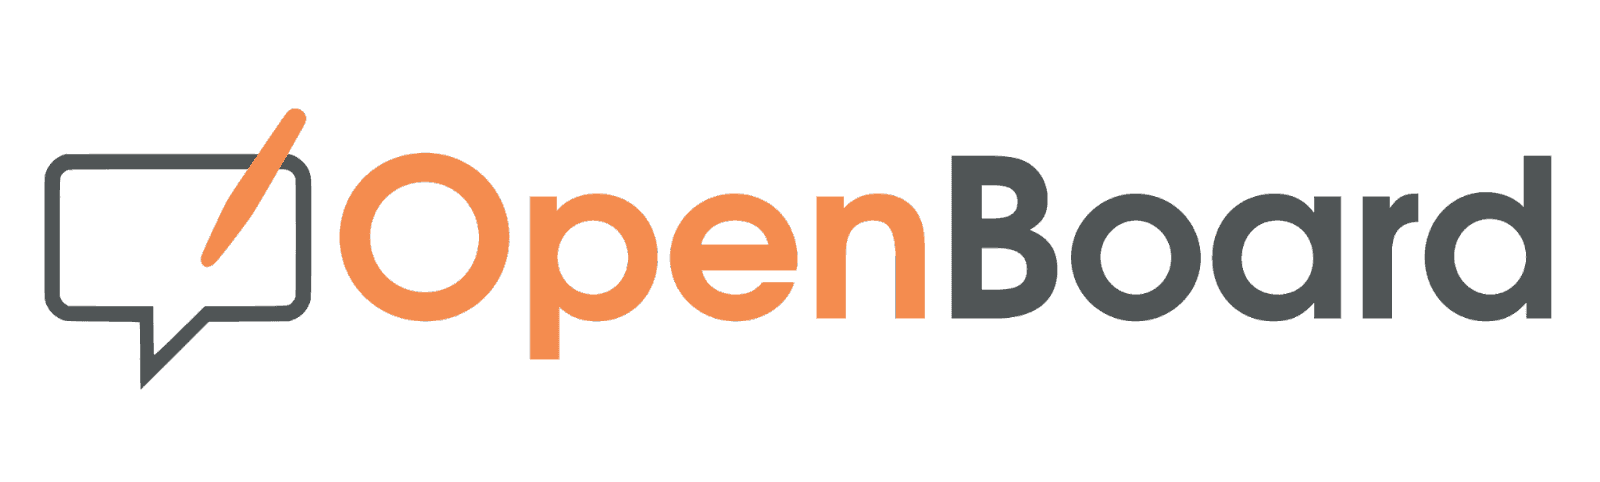 OpenBoard logo